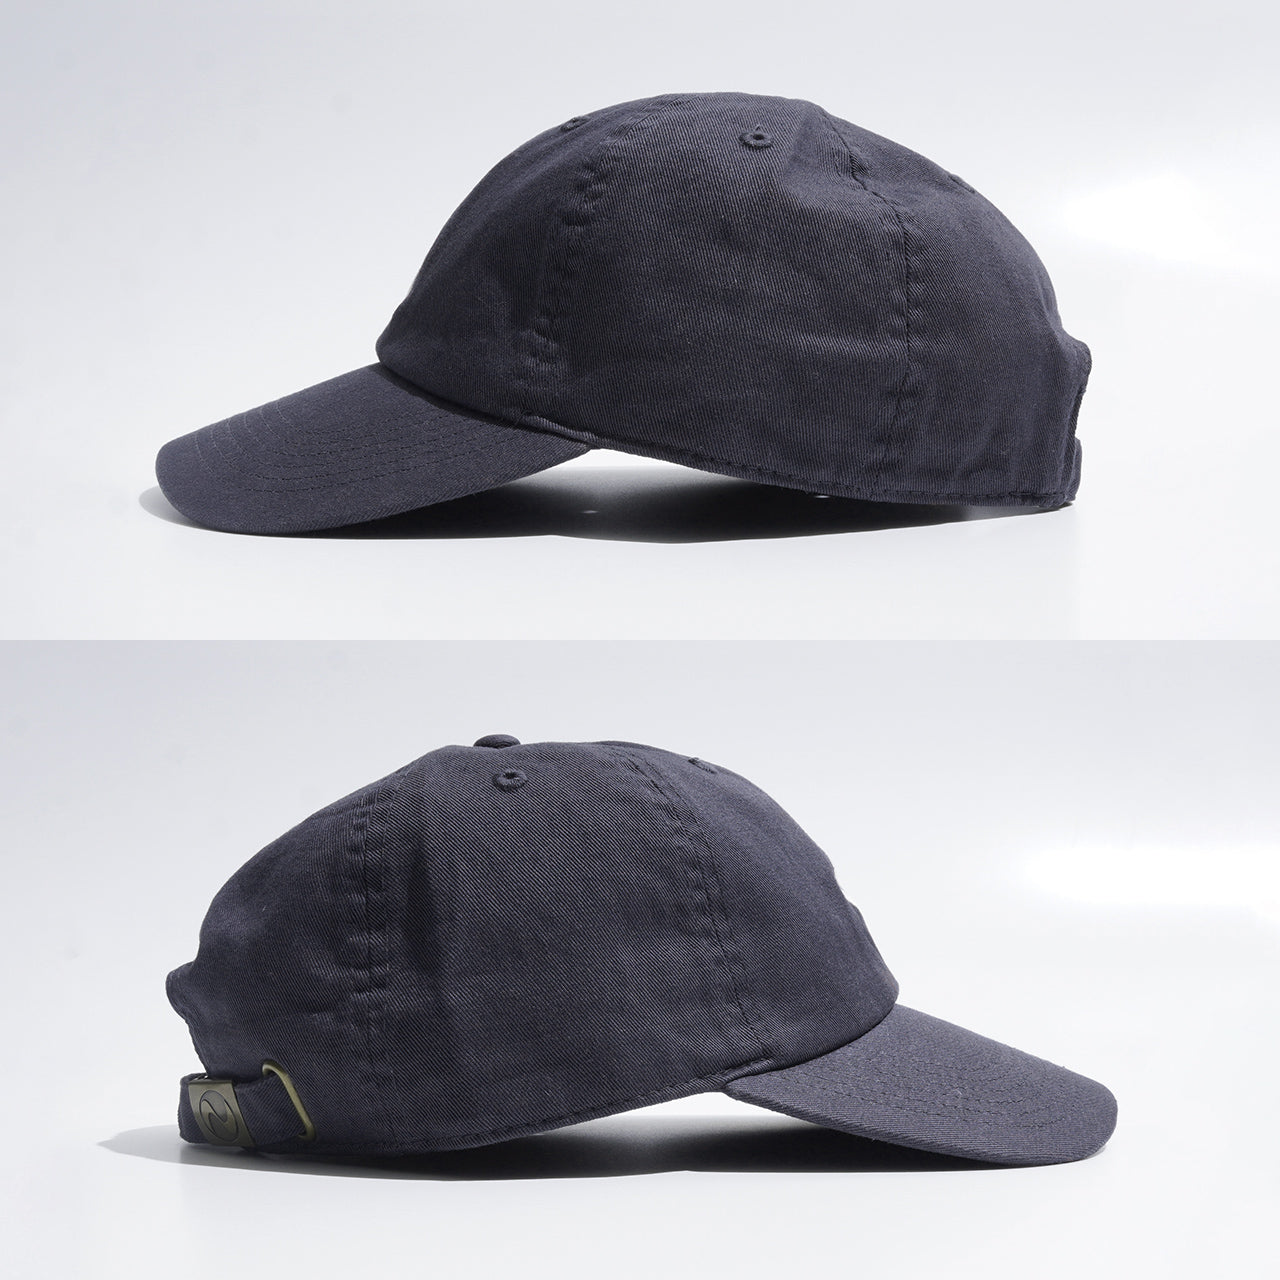 Crouka クローカ 70周年 アニバーサリー オリジナル キャップ 70th Anniversary Original Cap 帽子 1431 1128